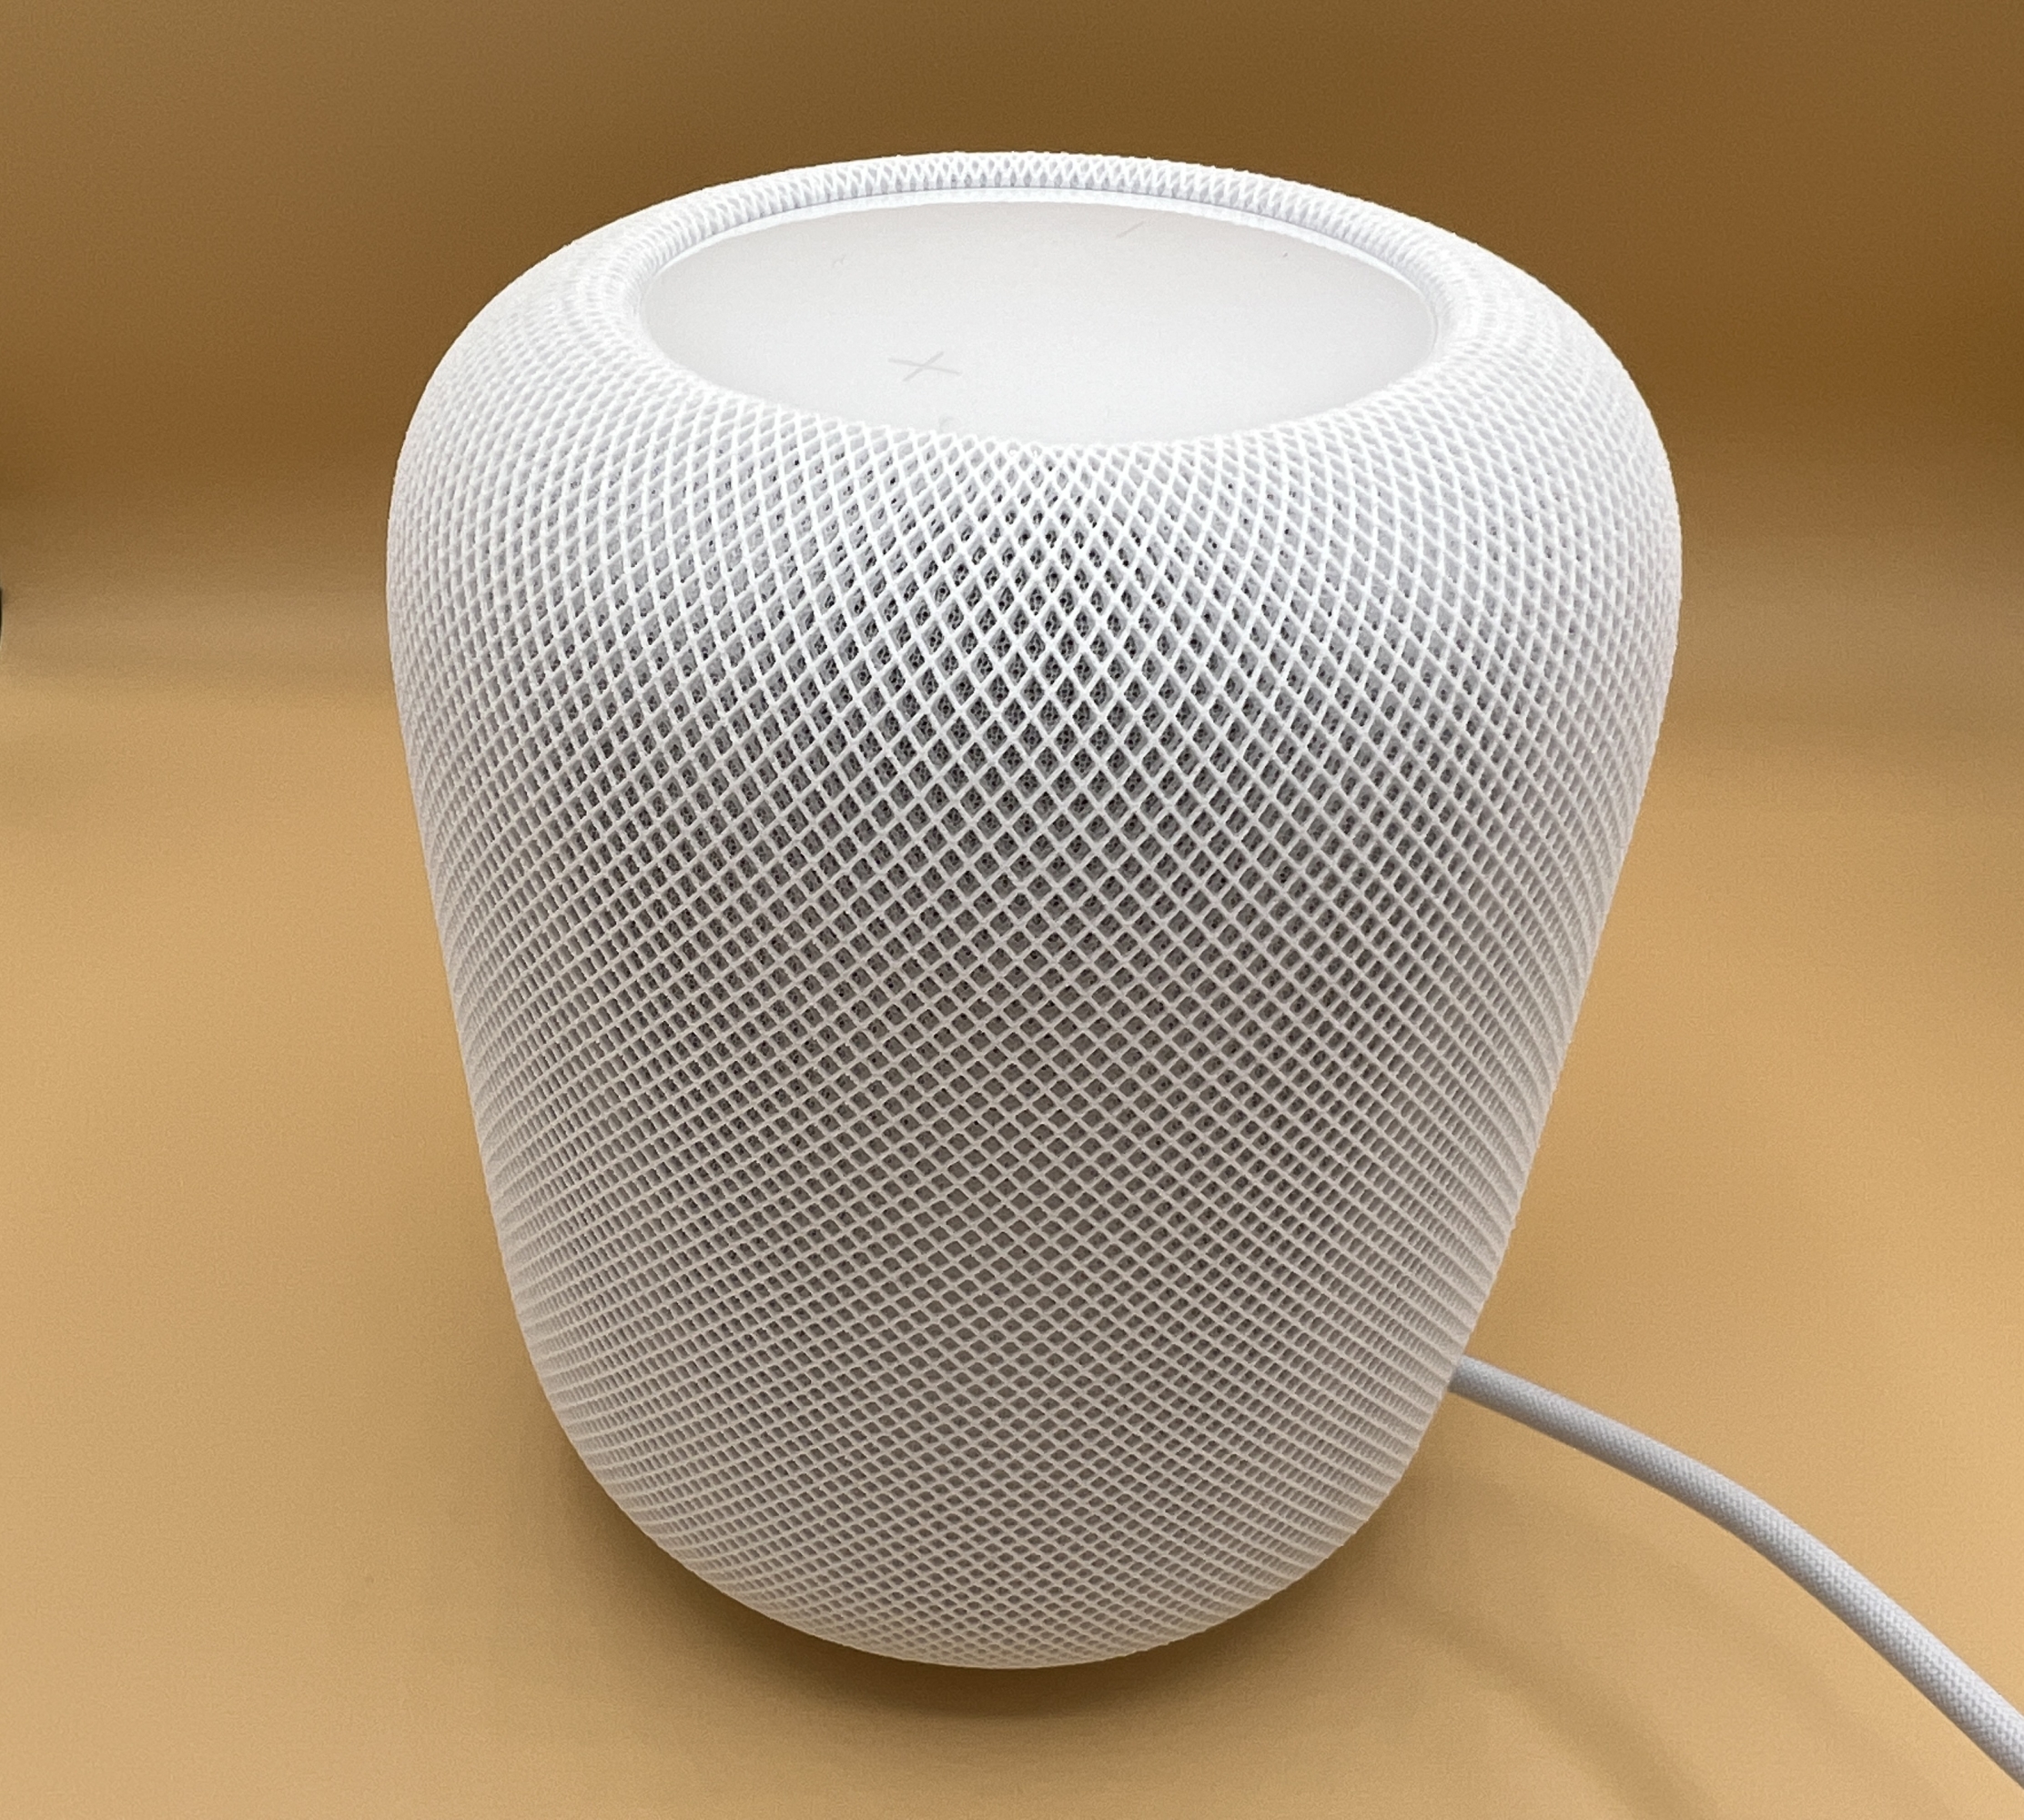 
                                    
                                HomePod Apple di seconda generazione: la prova dello speaker smart e con audio spaziale